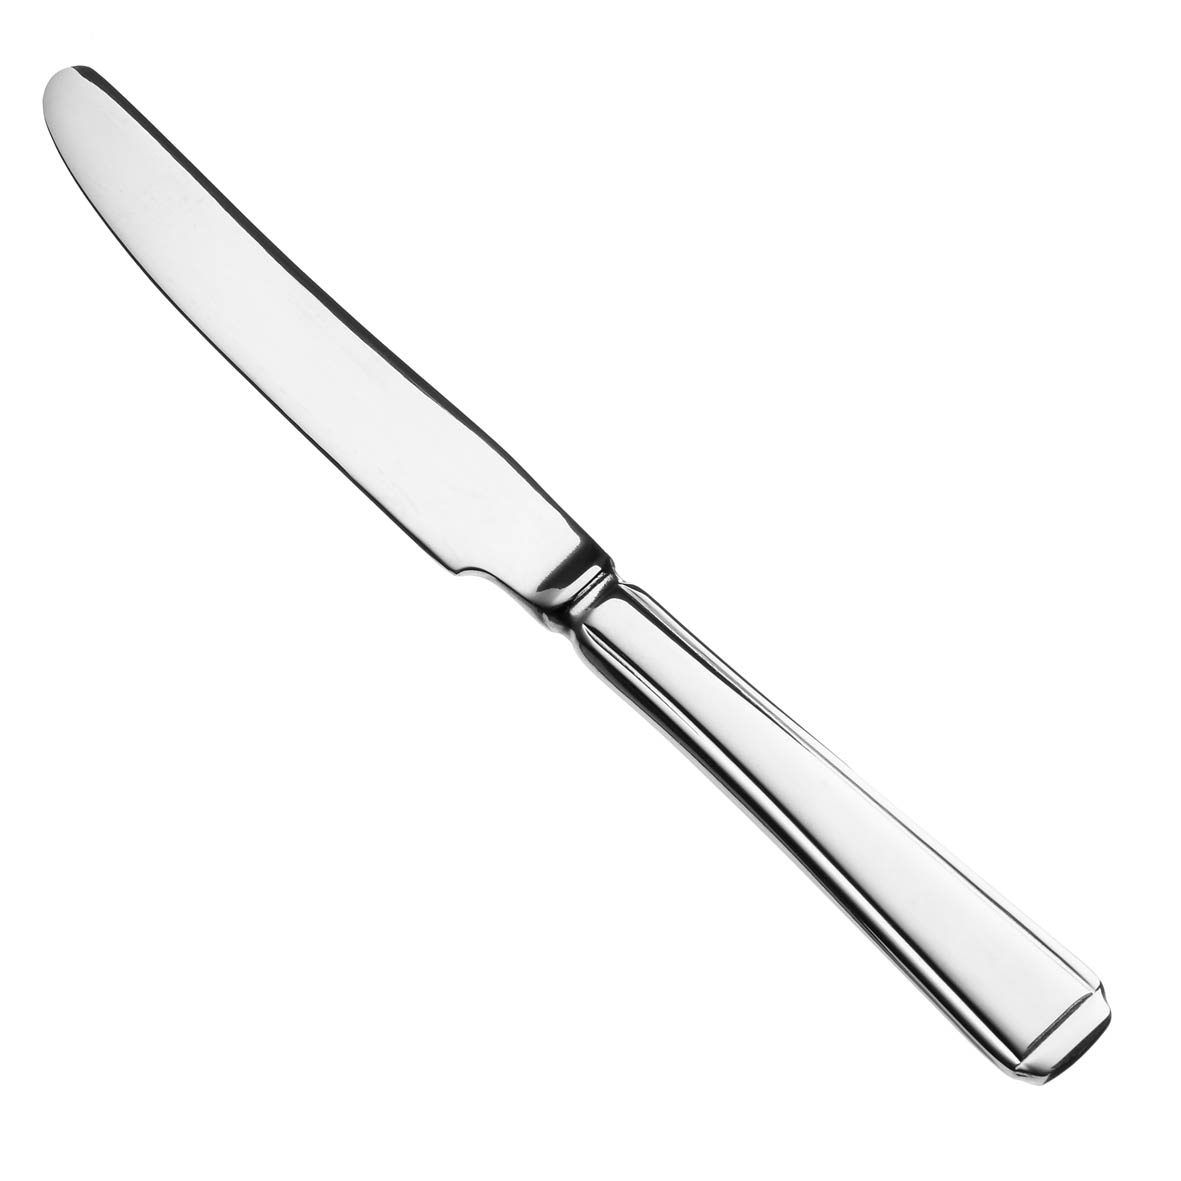 kitchen knife clip art black and white